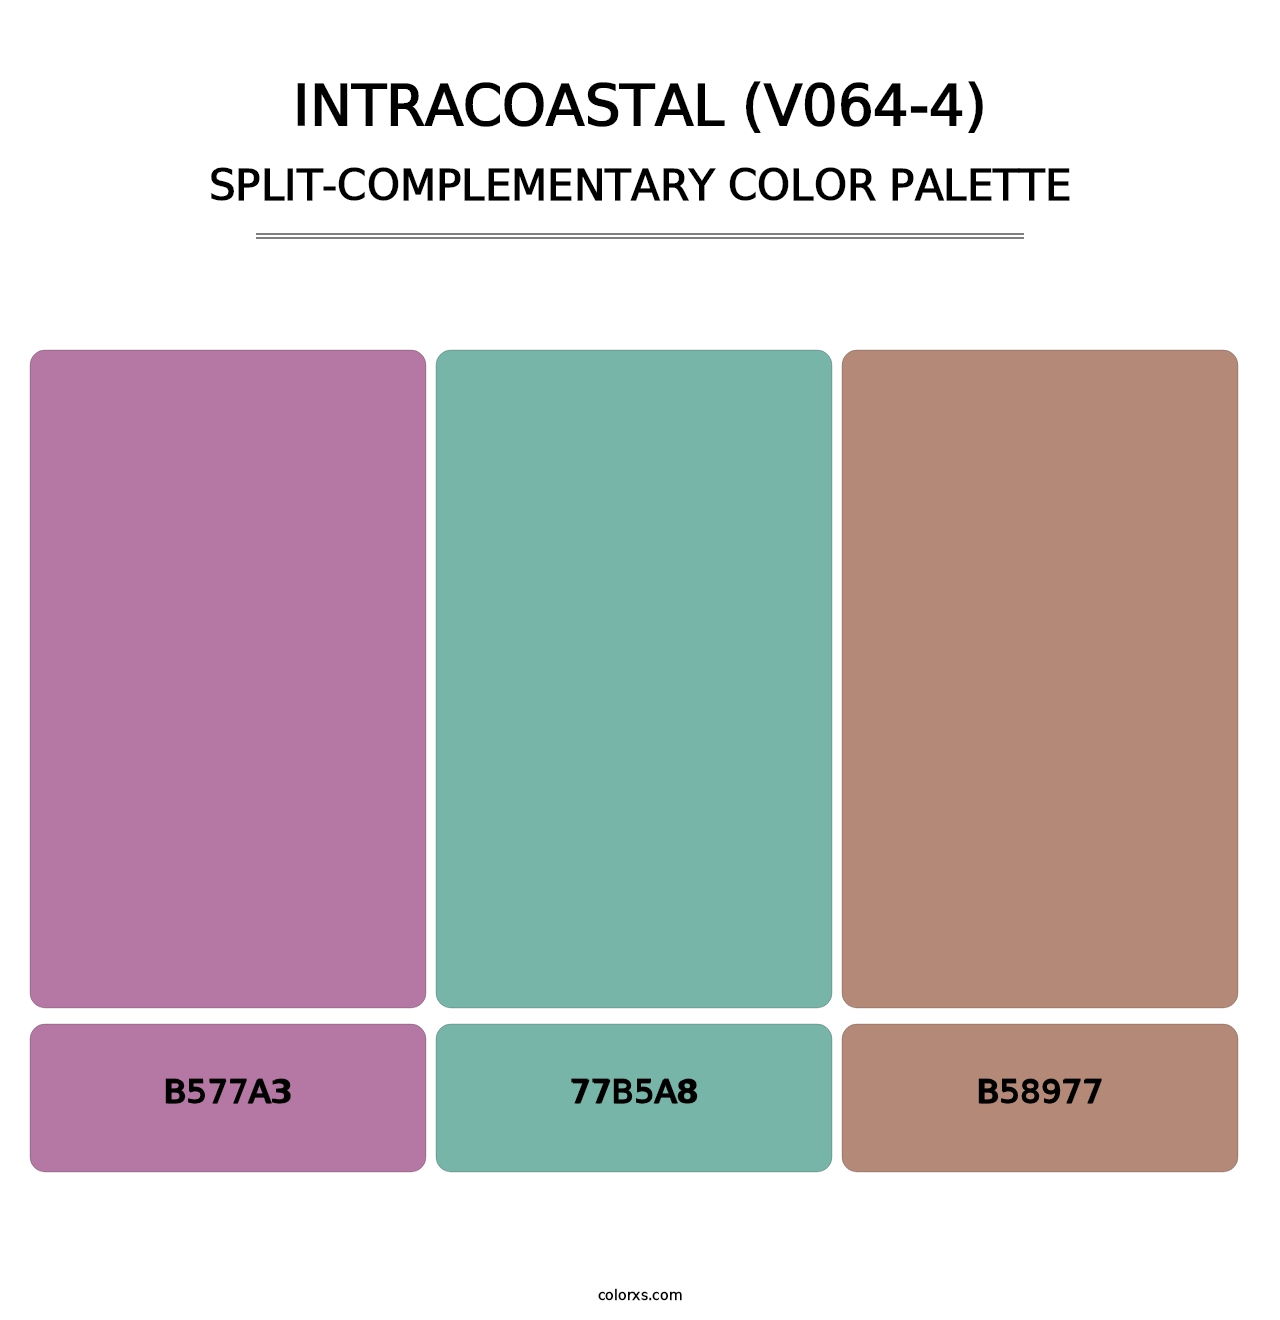 Intracoastal (V064-4) - Split-Complementary Color Palette